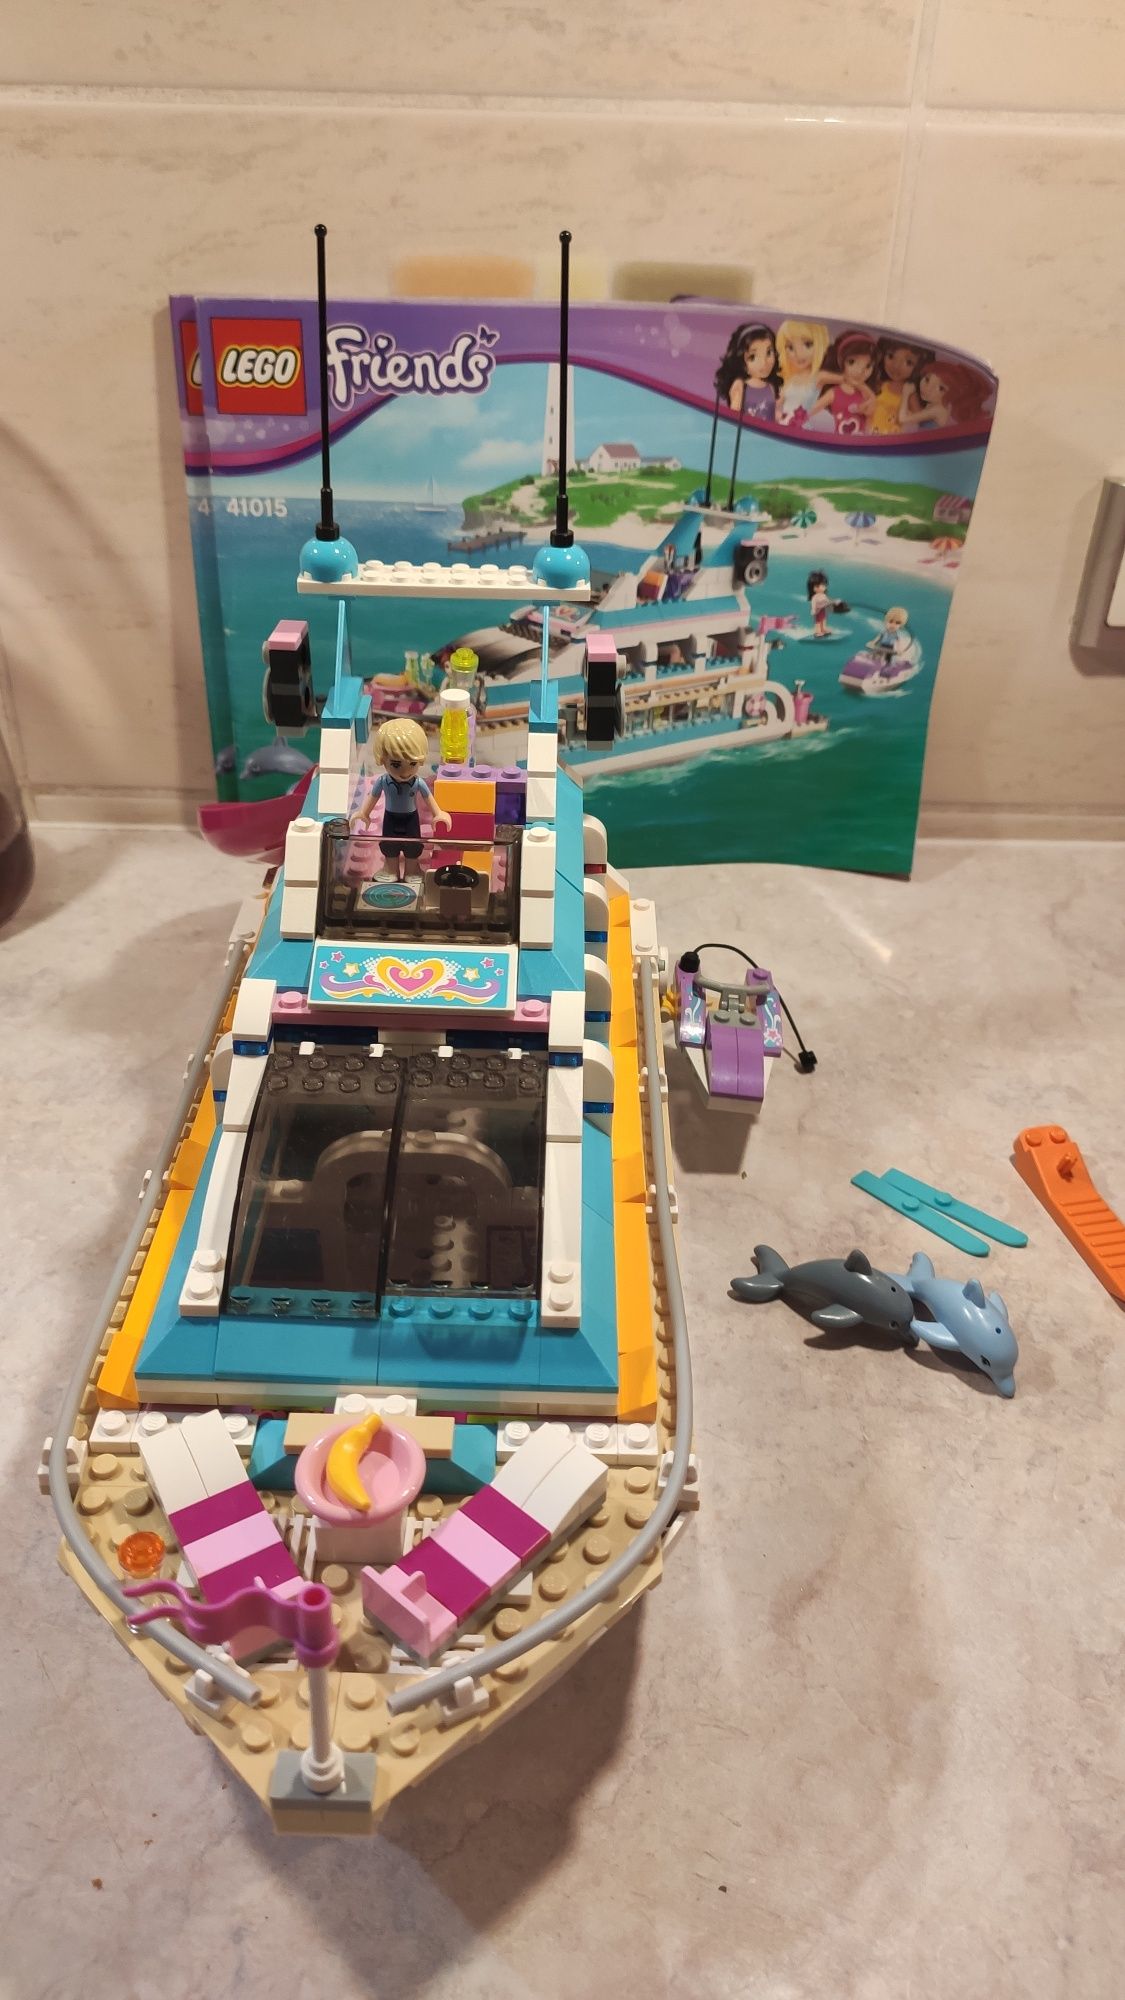 Lego Friends 41015 Jacht wycieczkowy